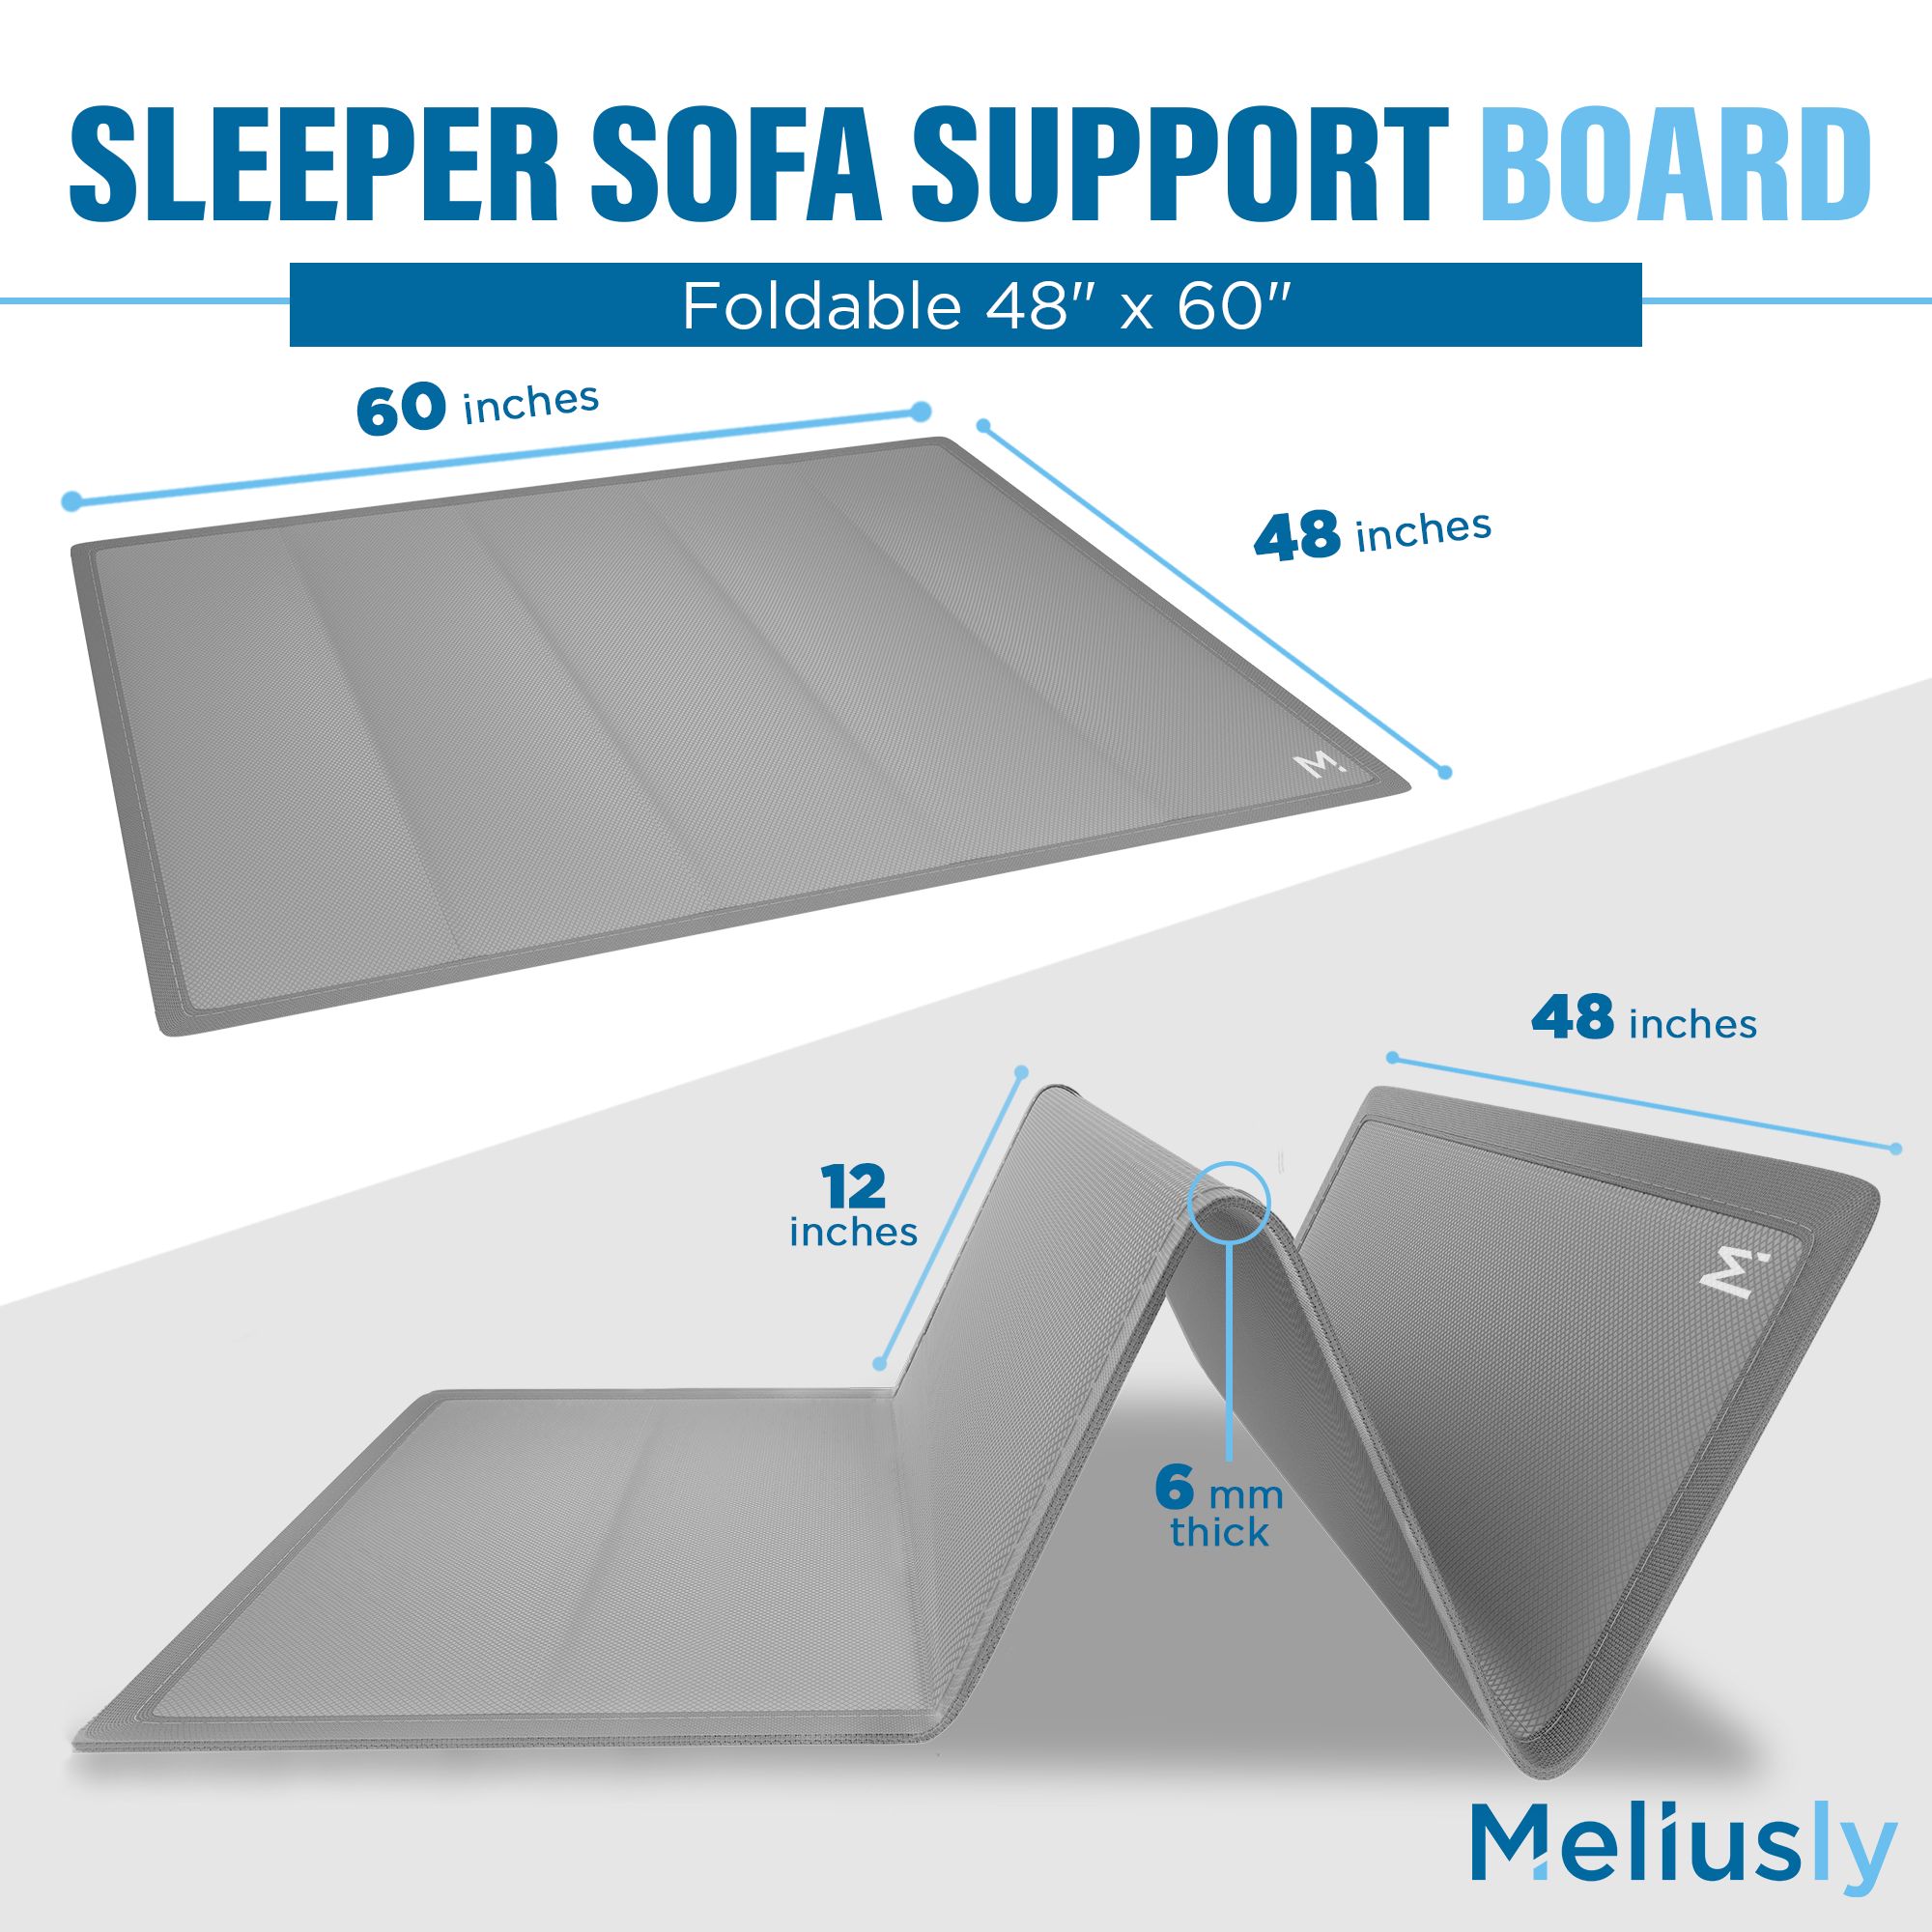 Meliusly Sleeper Sofa Support Board